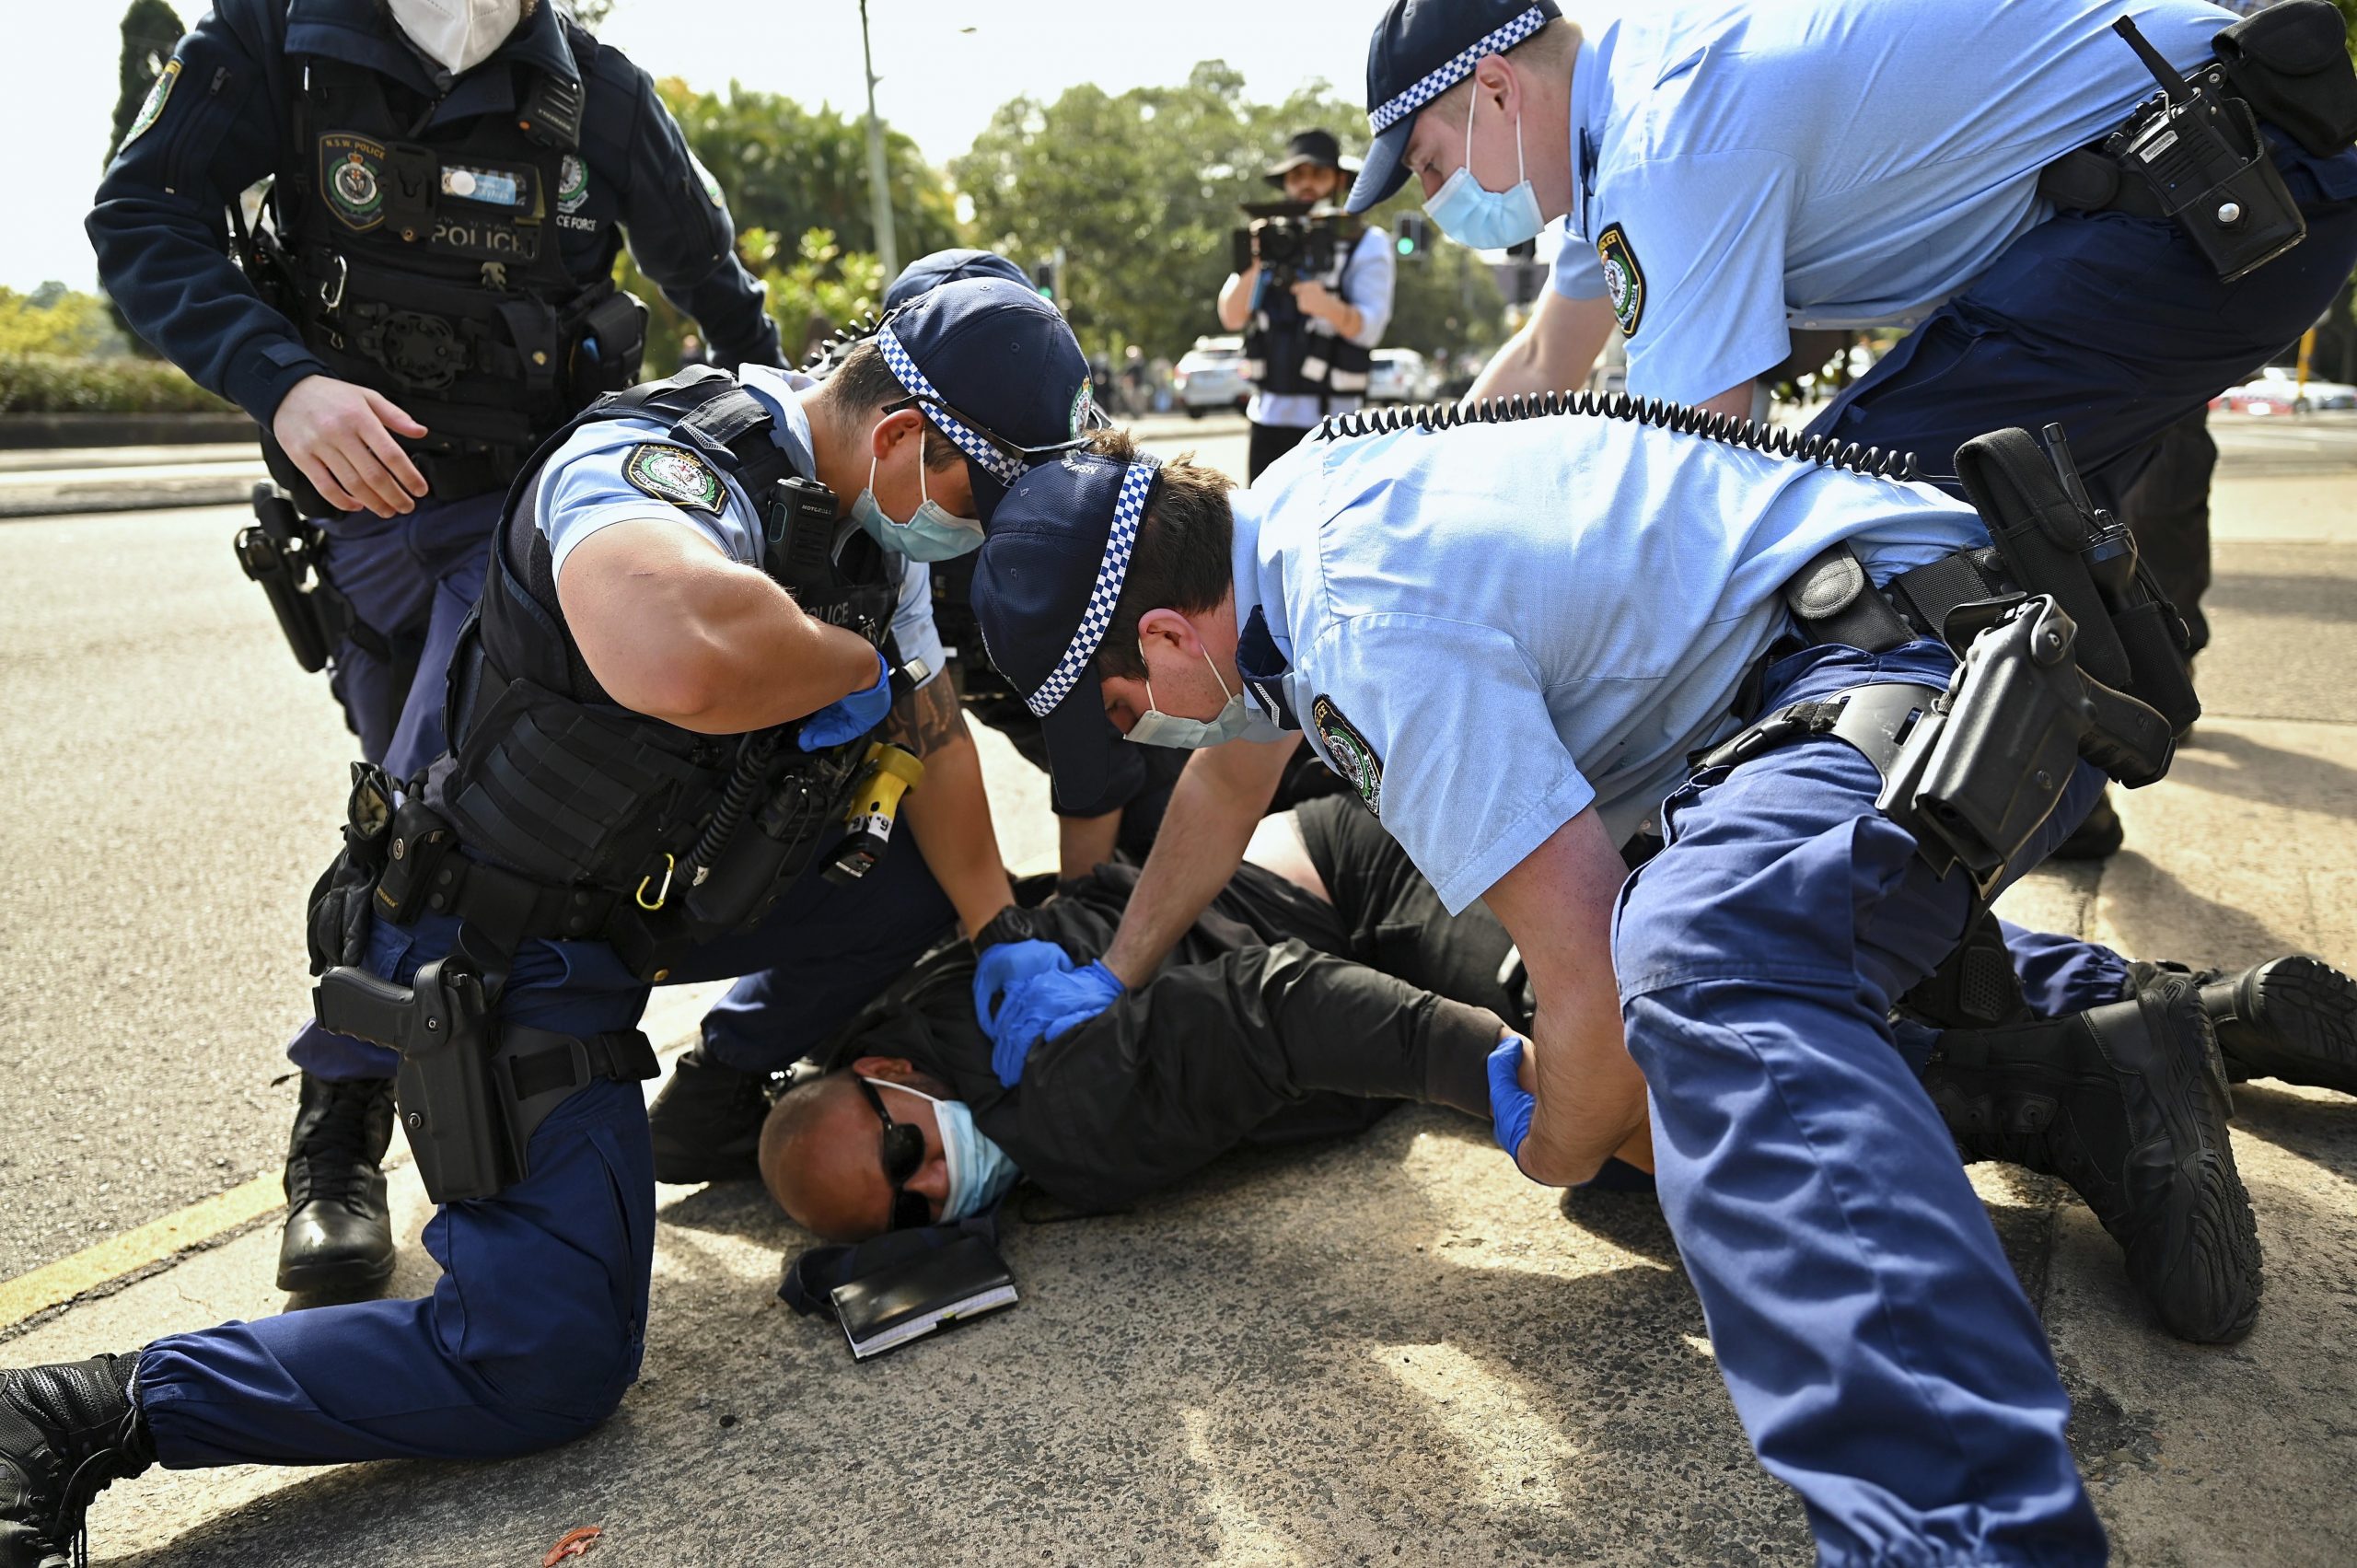 Police arrest two anti-lockdown leaders across Australia, New Zealand